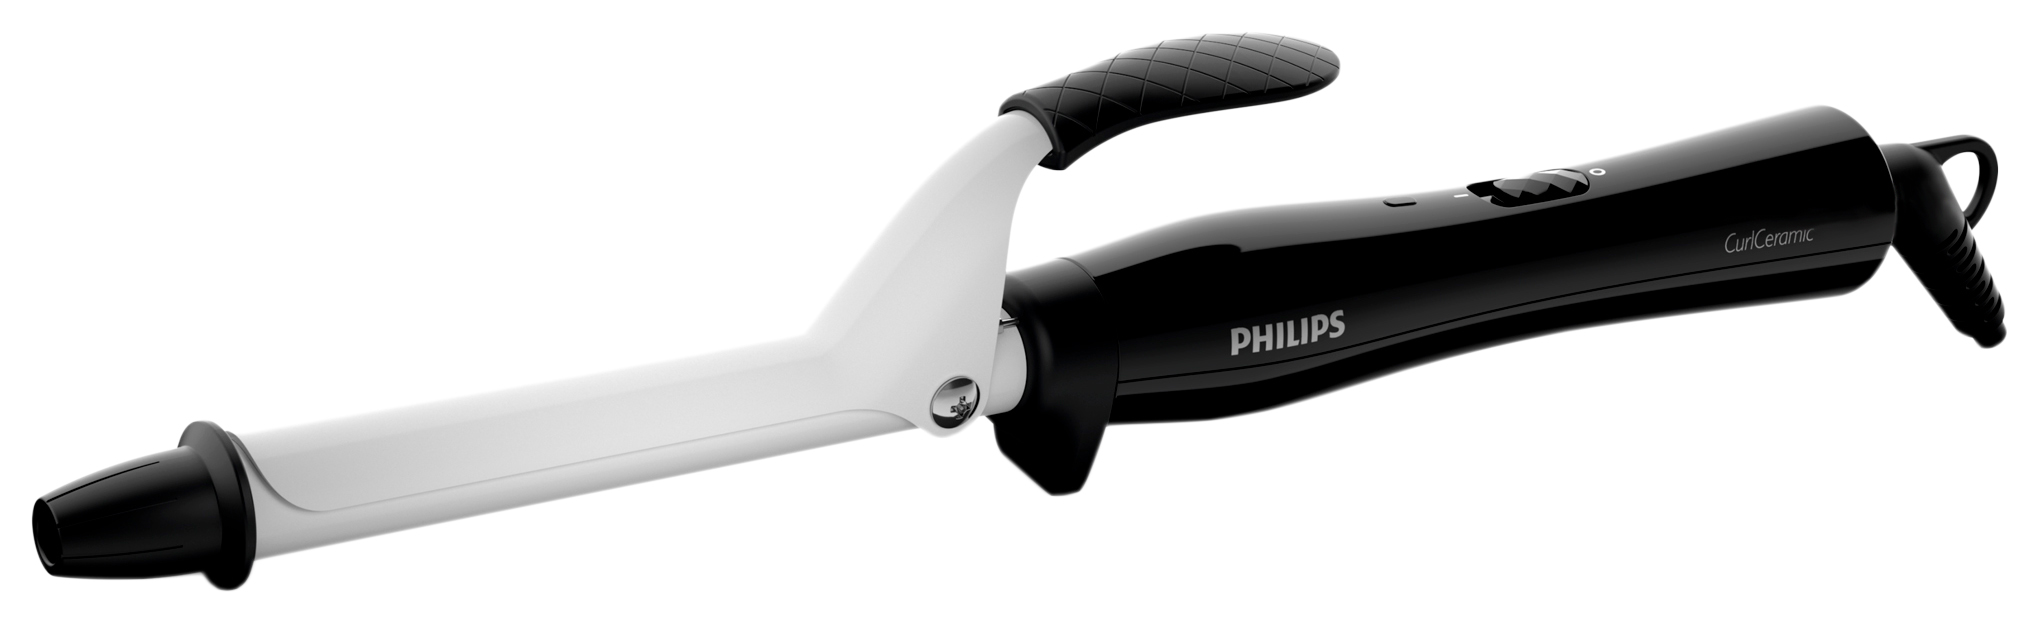 Электрощипцы Philips StyleCare BHB862/00 Silver/Black электрощипцы philips moistureprotect bhb878 00 бежевые белые